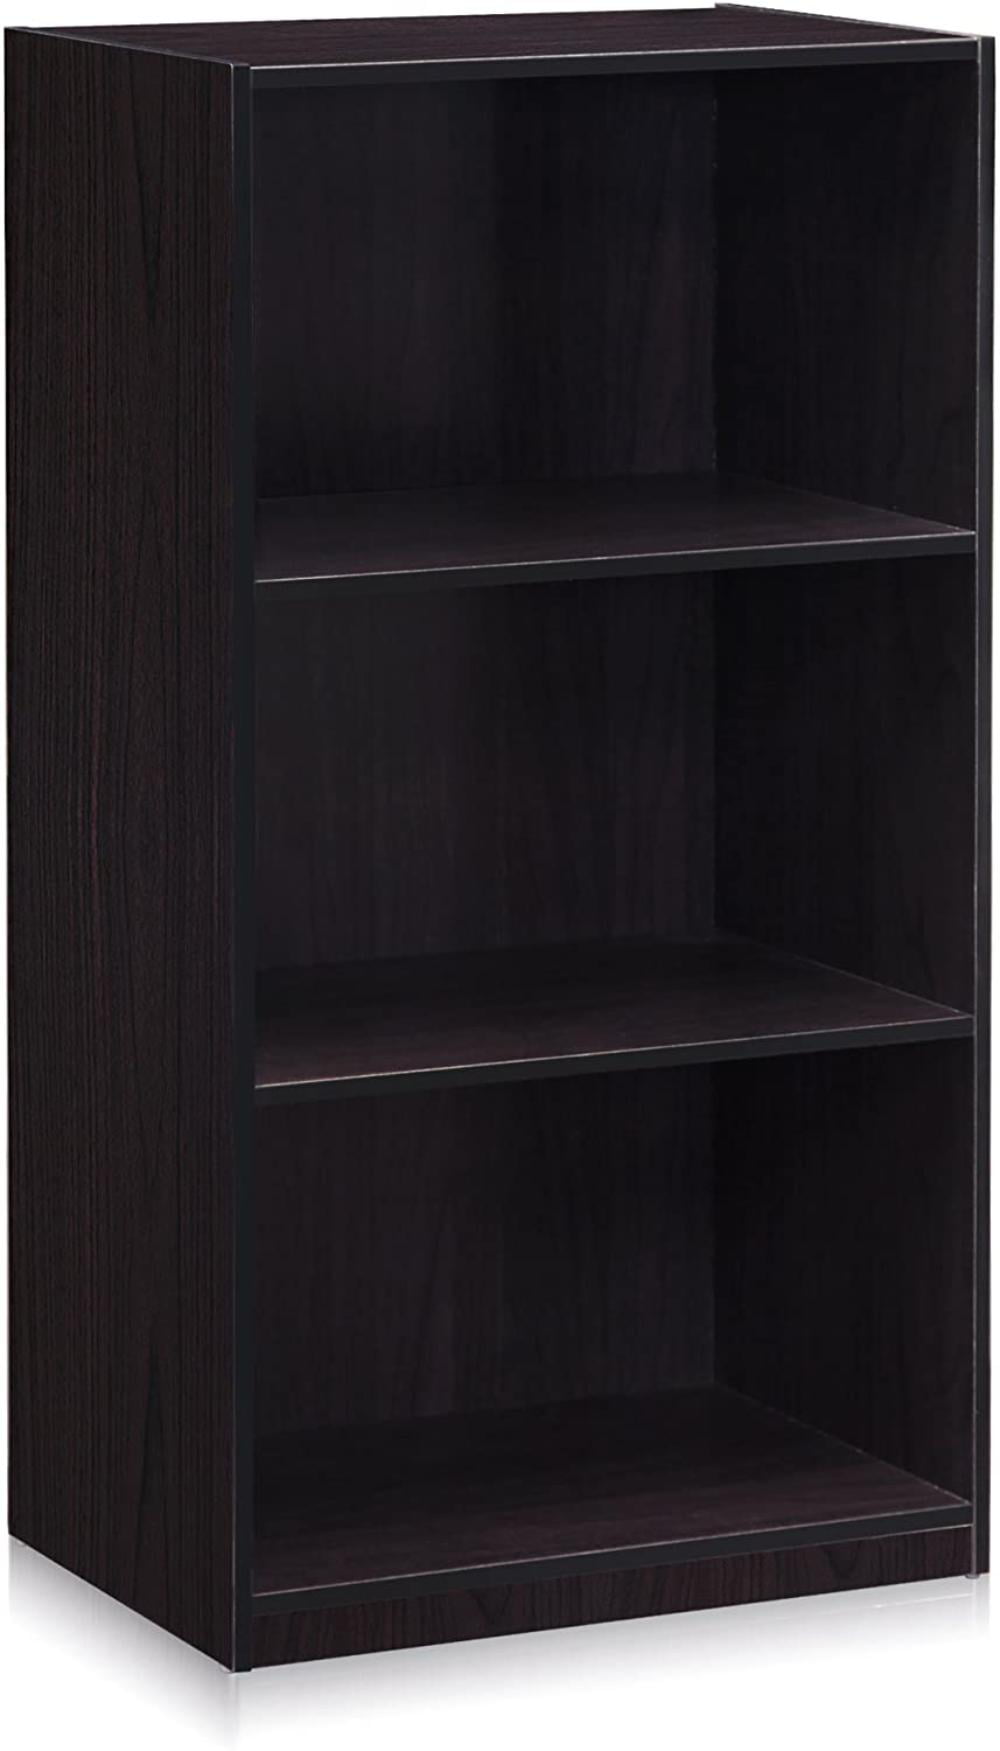 Details about   Furinno Basic 3-Tier Bookcase Storage Shelves Dark Walnut 